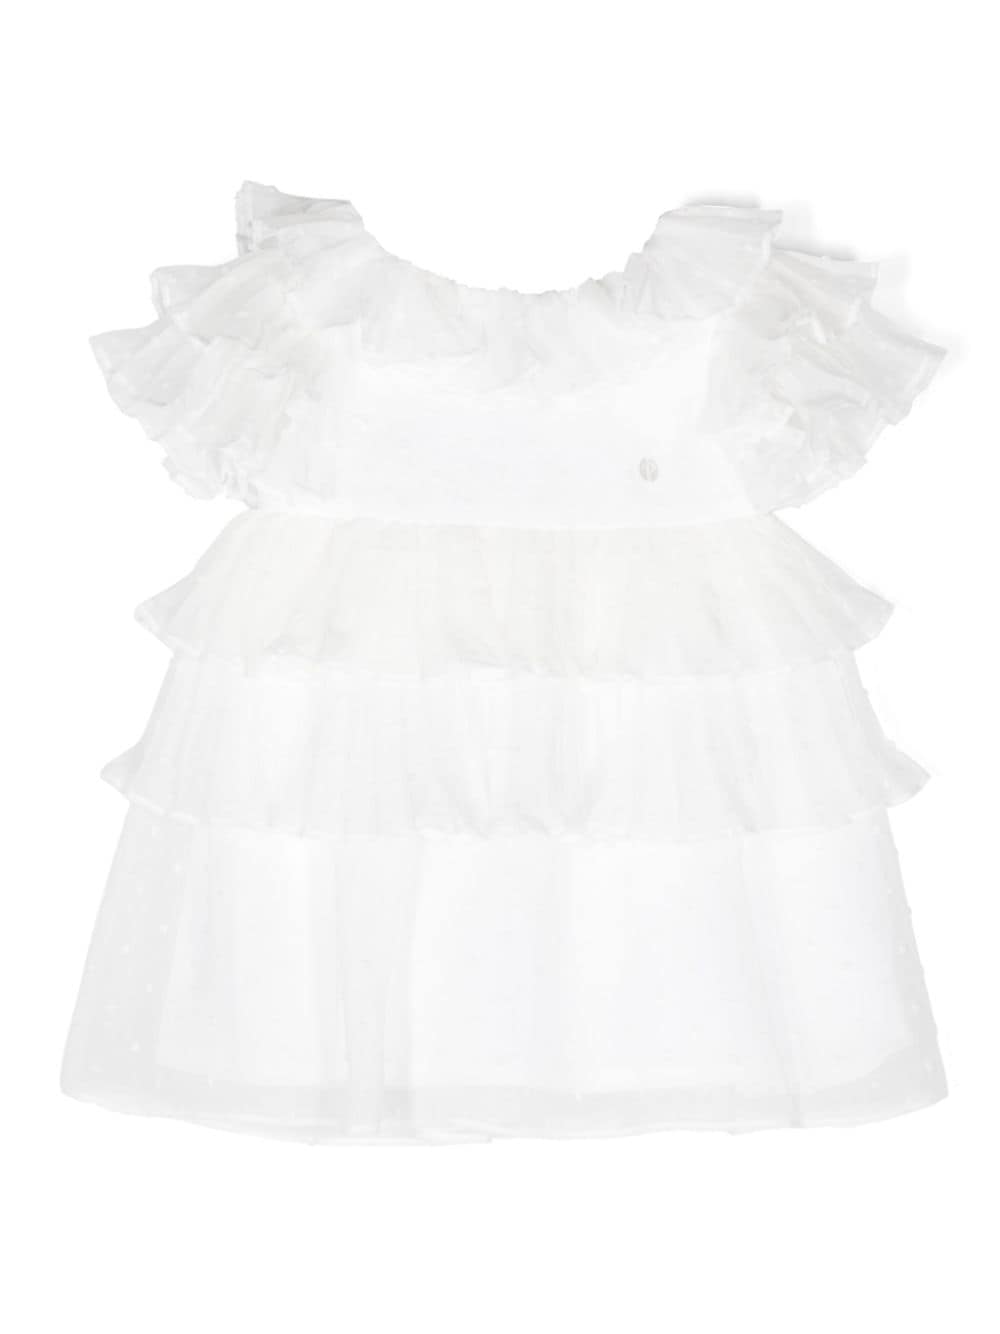 Patachou Babies' Ruffled Chiffon Dress In White